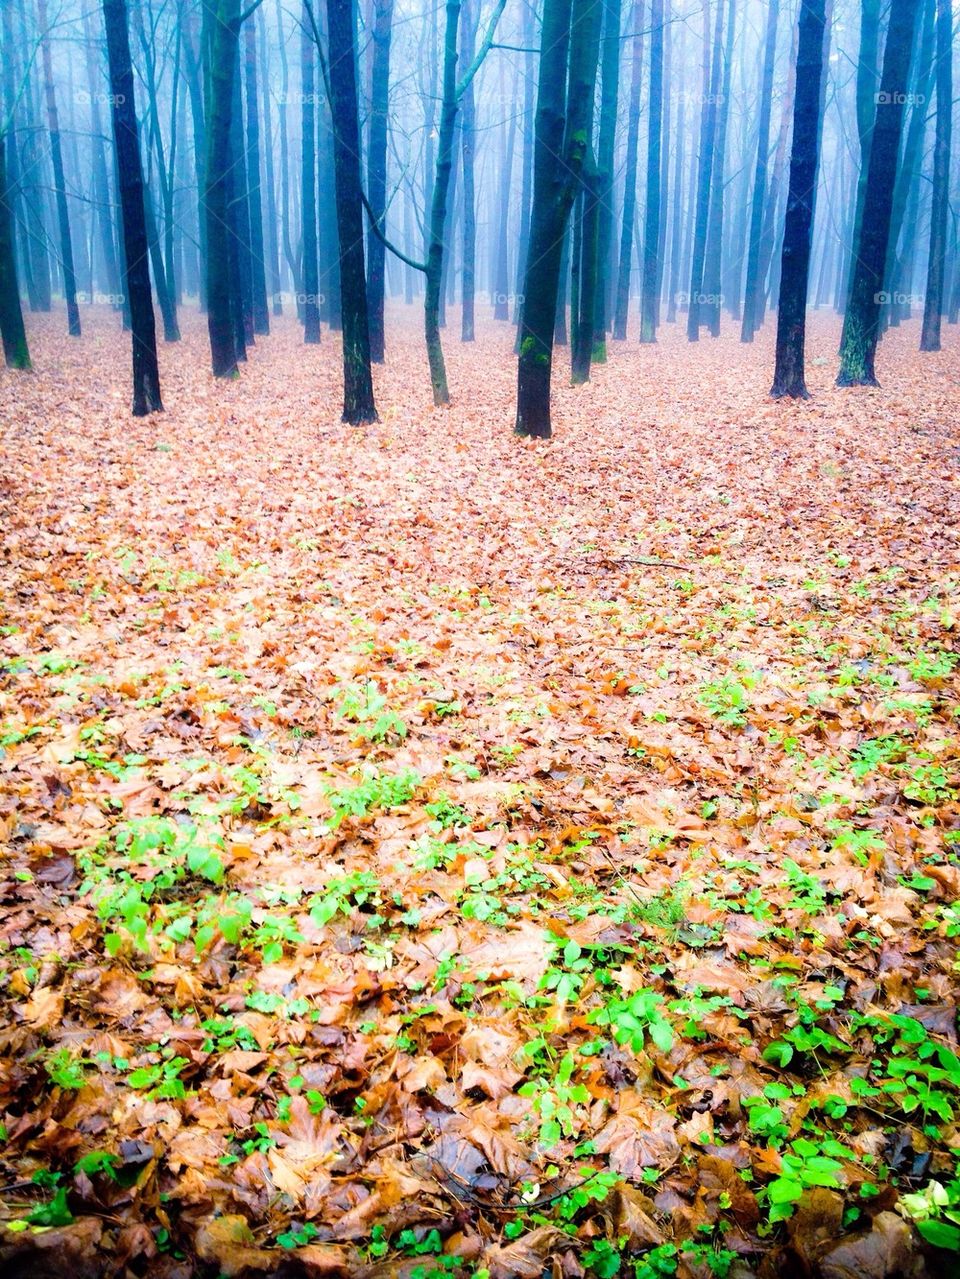 Foggy Autumn Forest